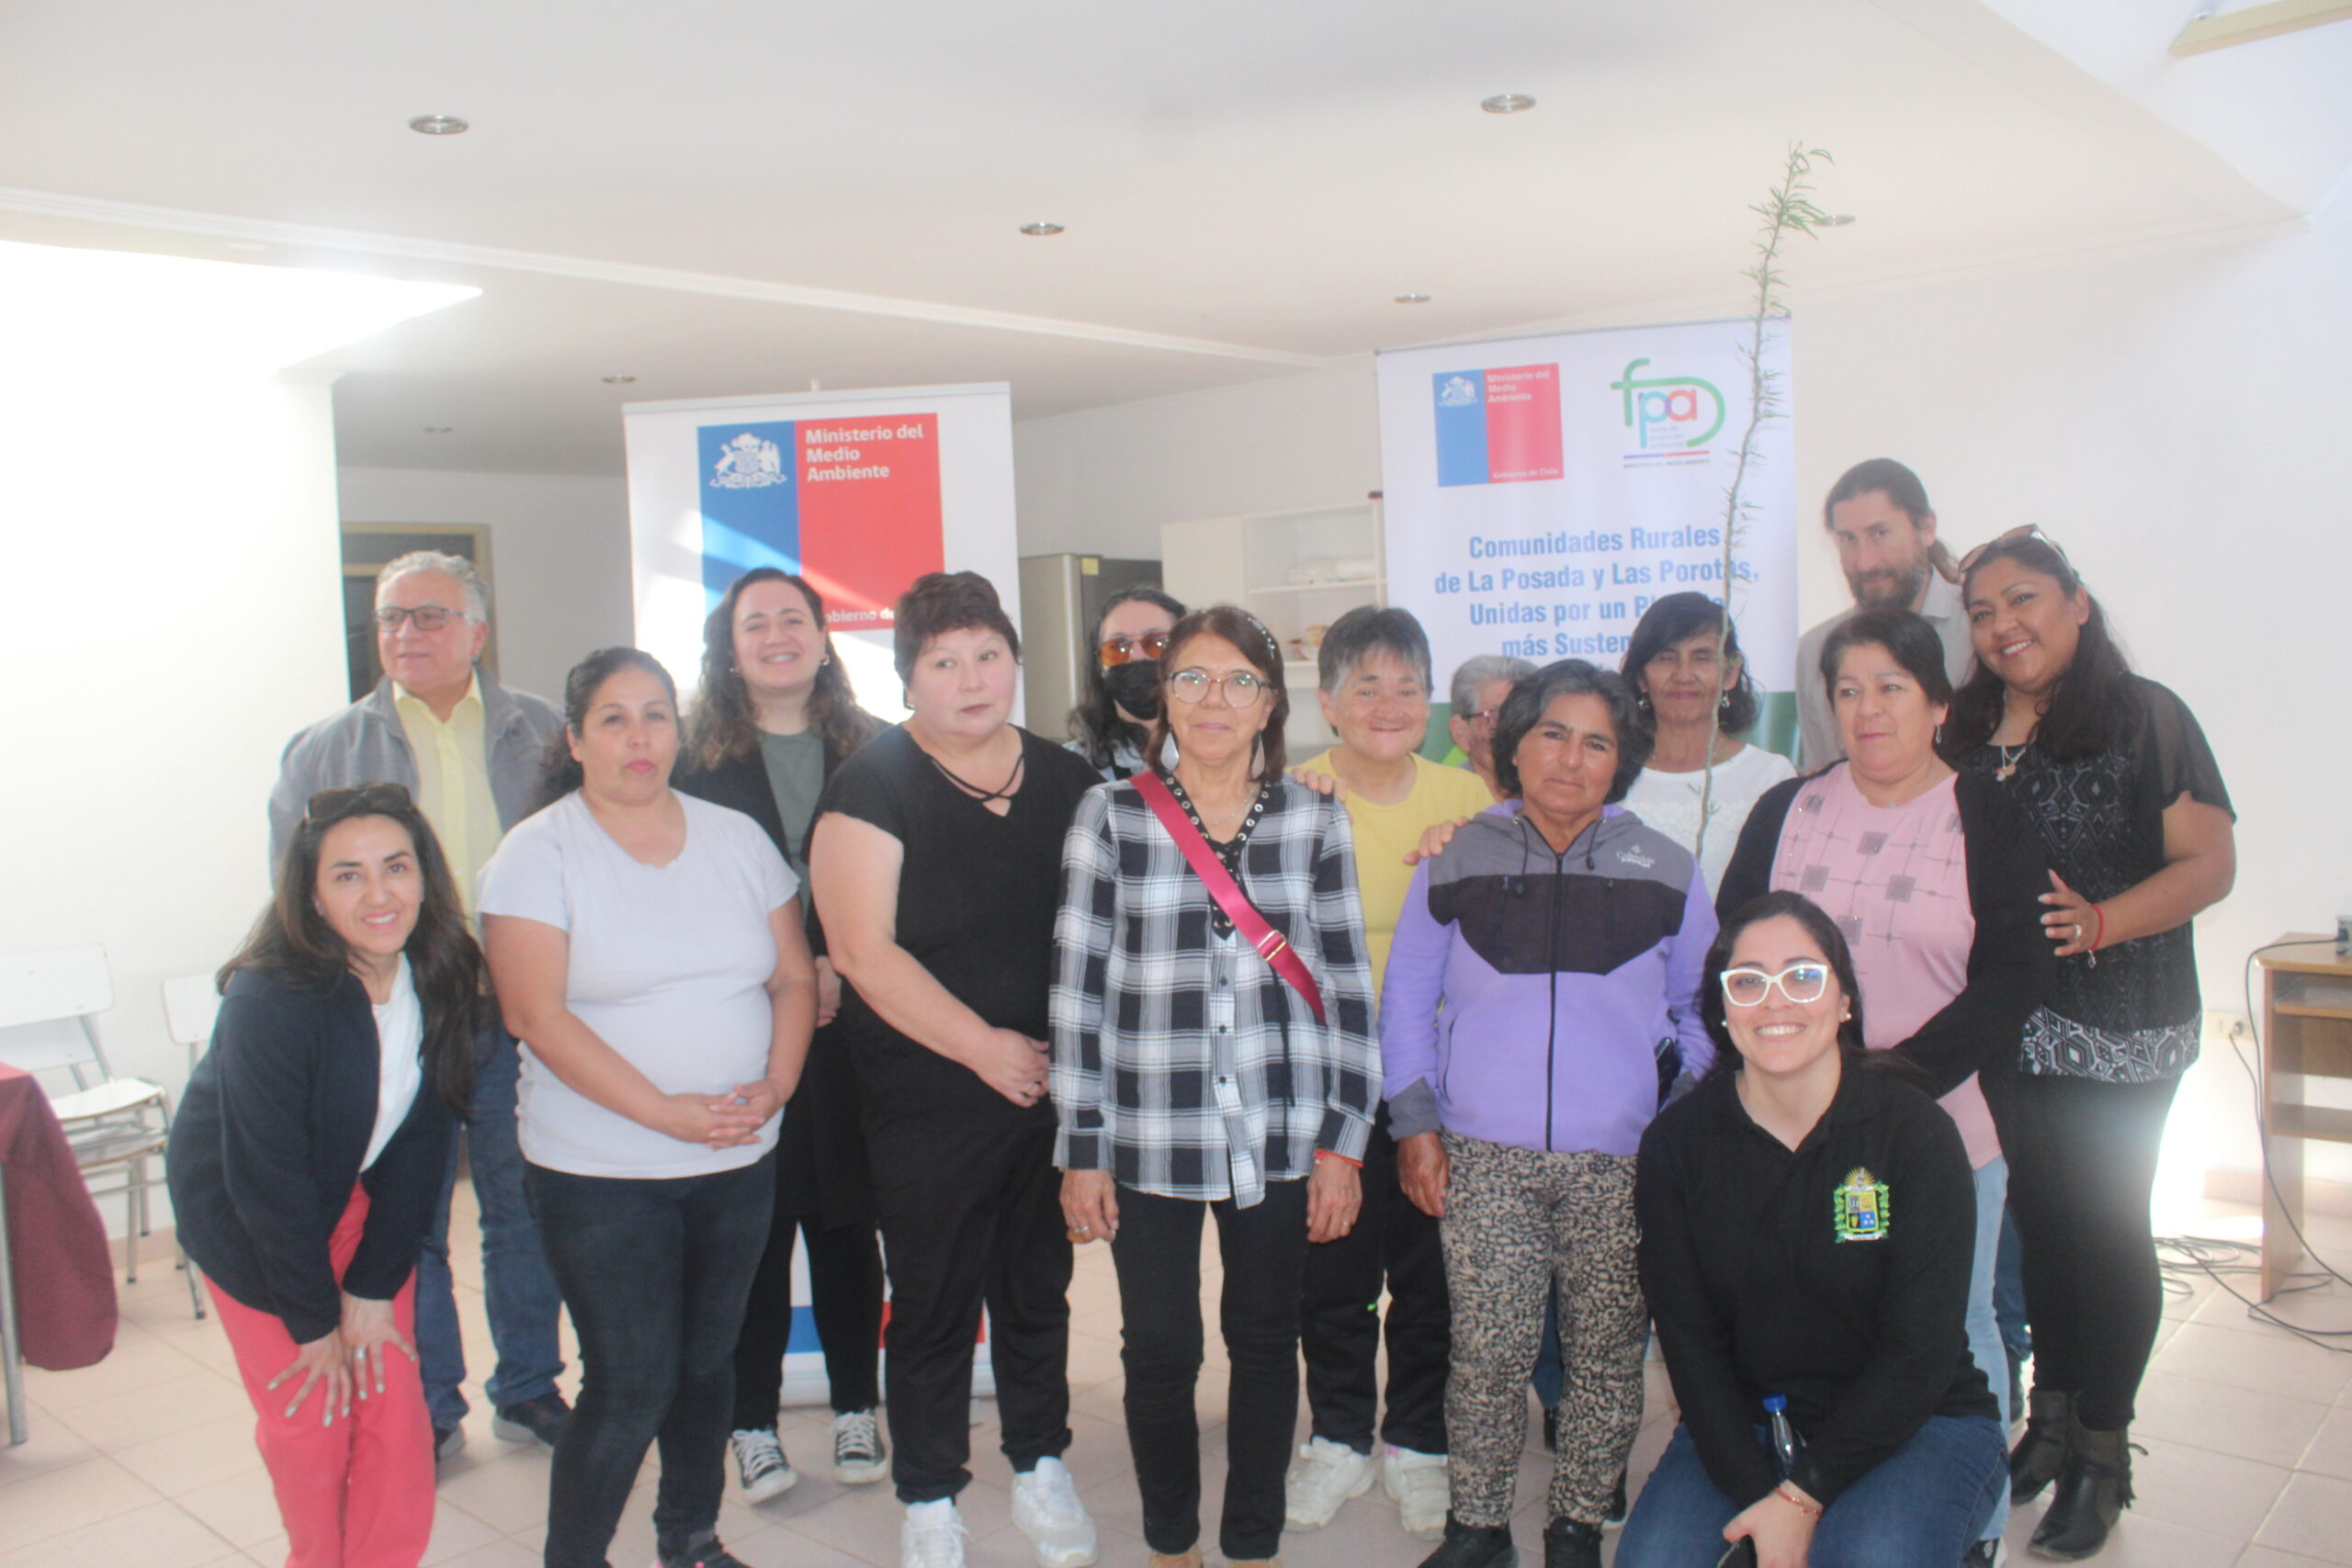 Comunidades rurales iniciaron proyecto sensibilización y educación ambiental en Vallenar